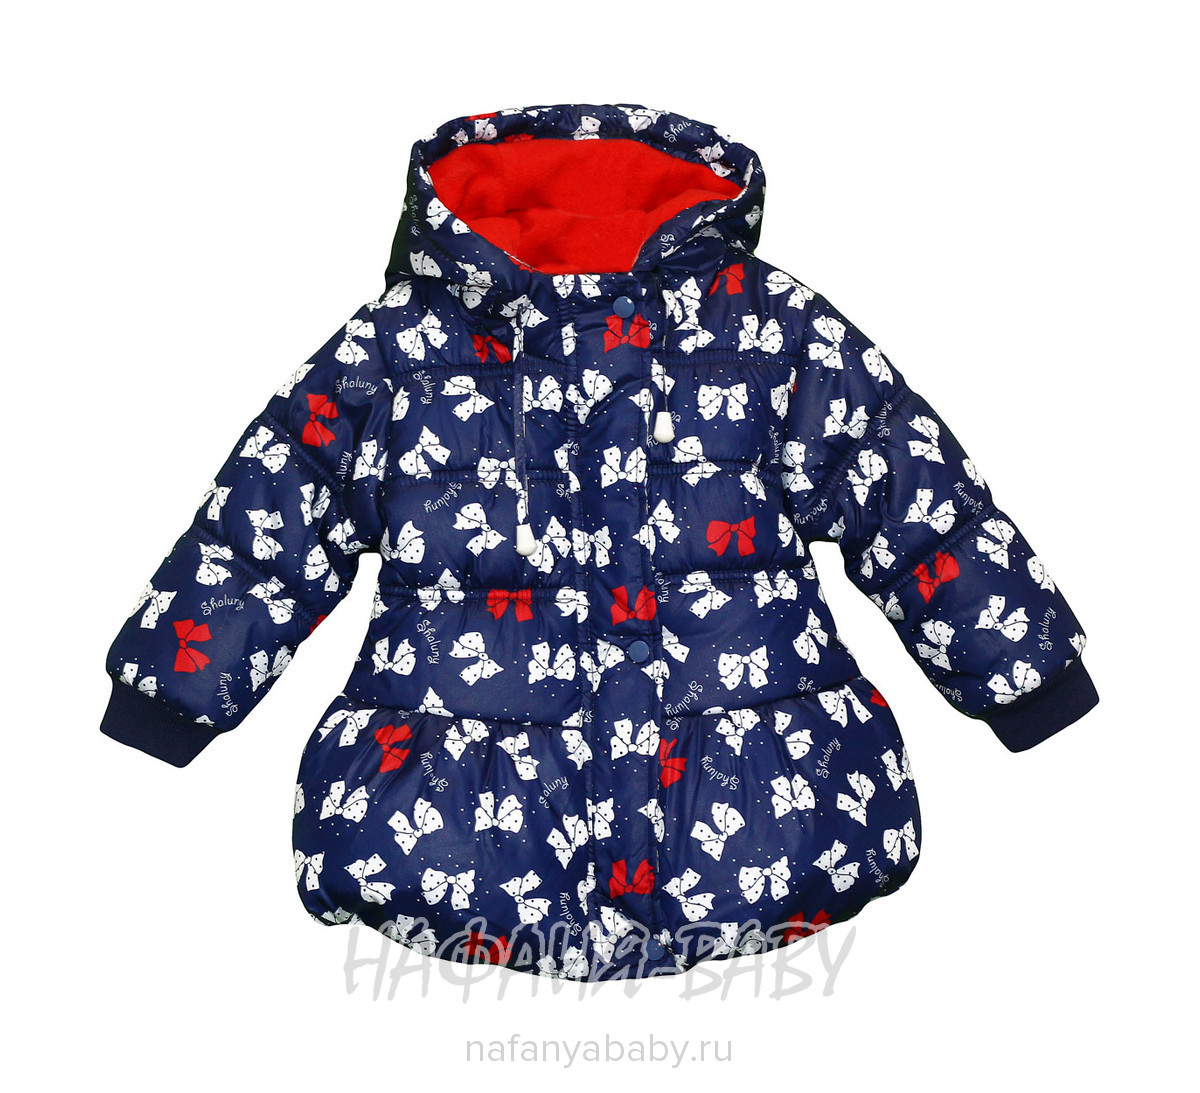 Детская демисезонная куртка AIMICO арт: 3143, 1-4 года, 0-12 мес, оптом Китай (Пекин)